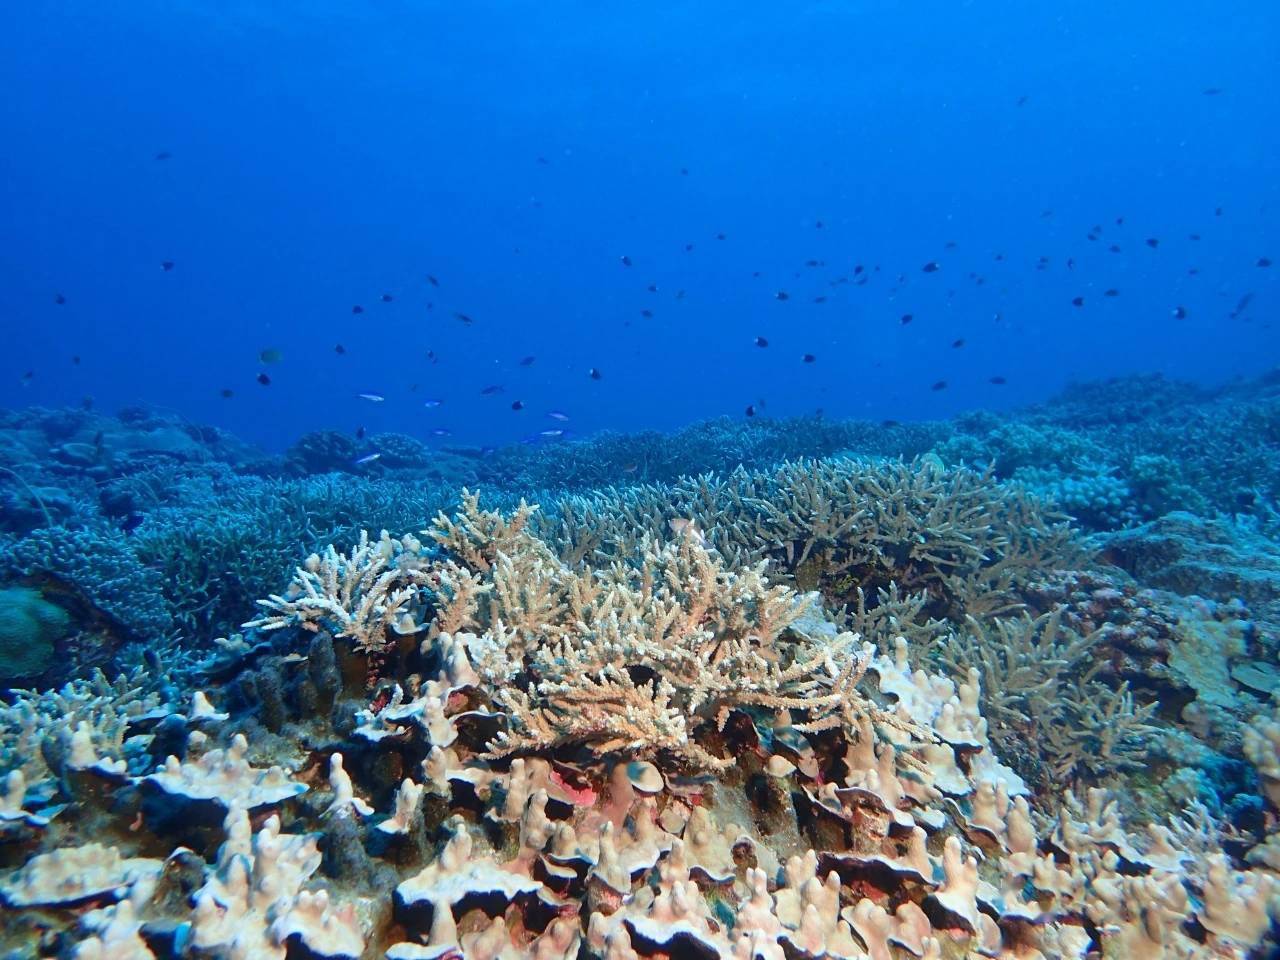 海星泛滥将常态化南海就是前车之鉴珊瑚礁都被啃秃了